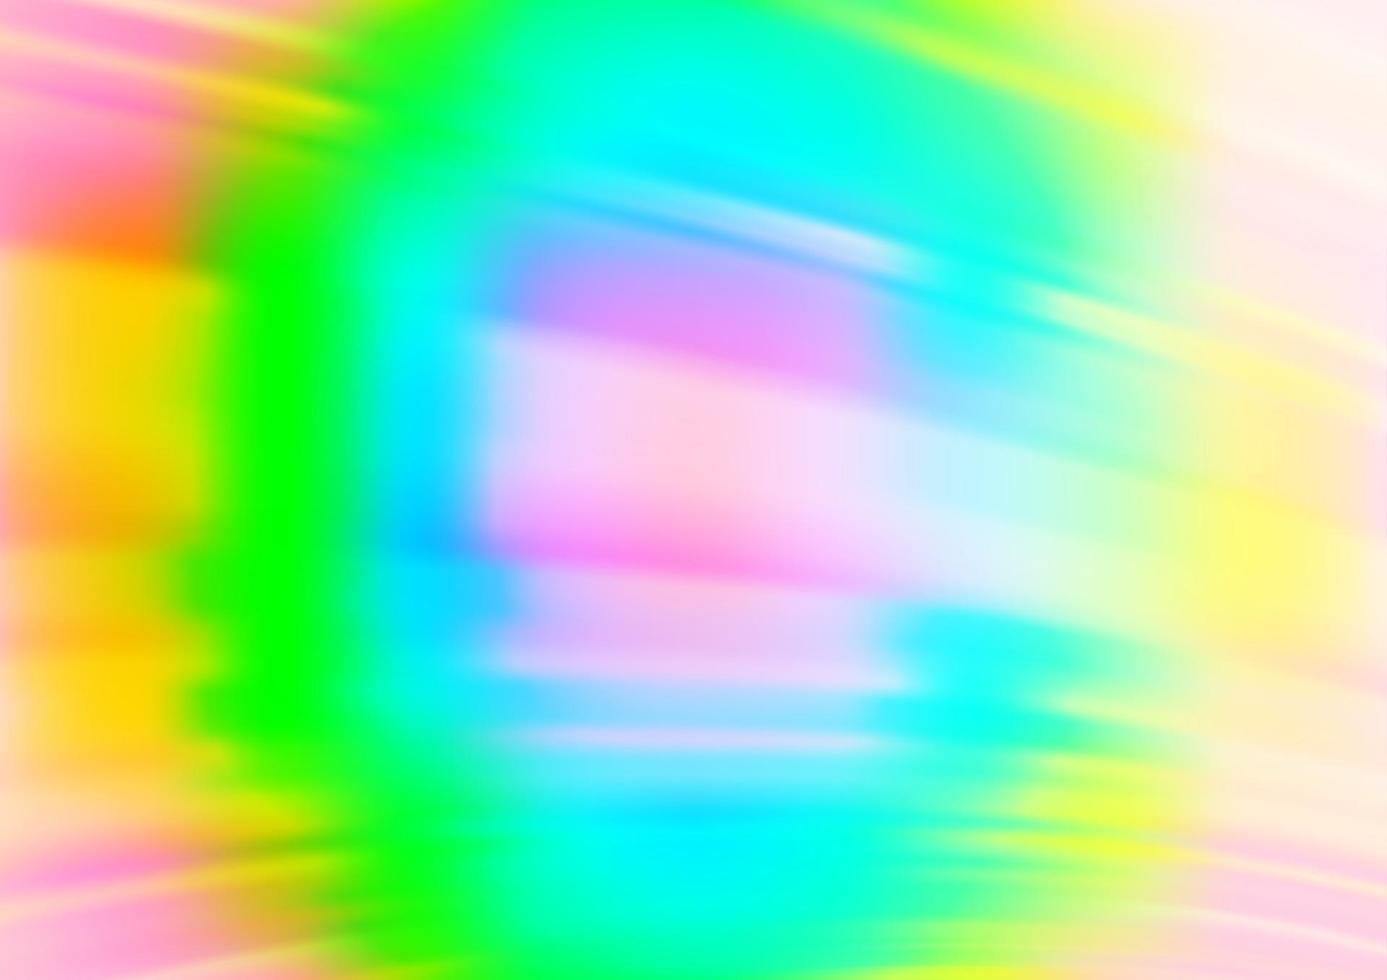 ljus mångfärgad, regnbåge vektor suddig glans abstrakt bakgrund.